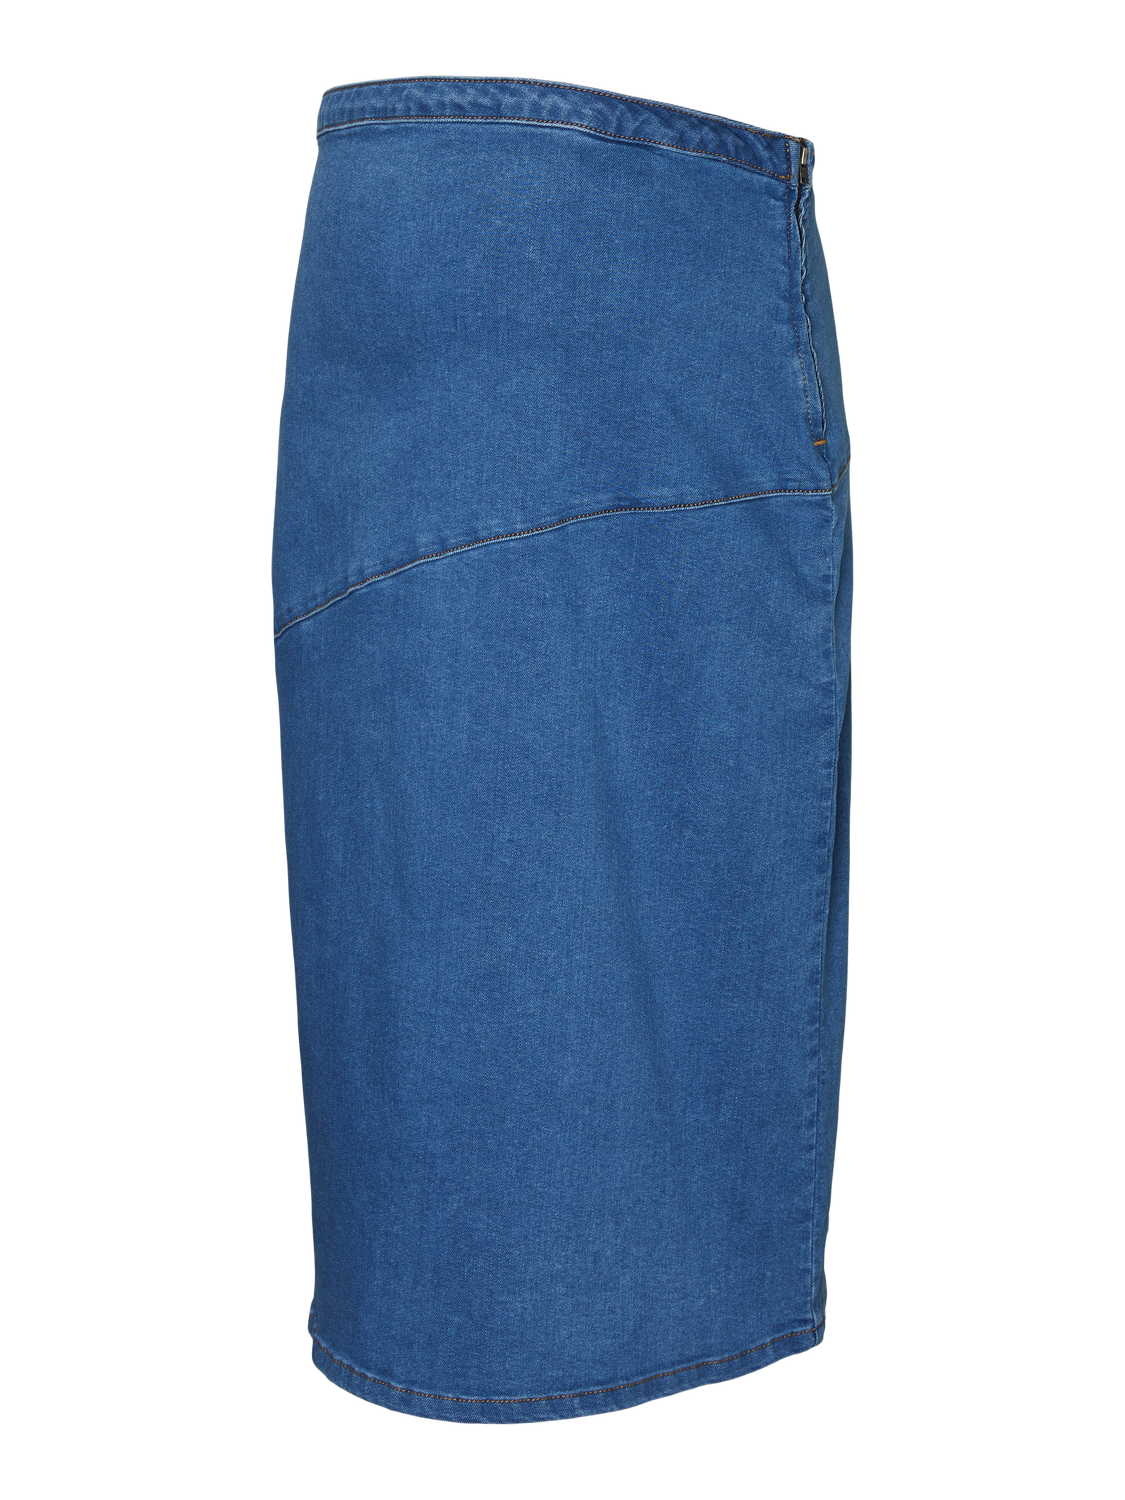 MAMA.LICIOUS Jupe courte Taille haute -Medium Blue Denim - 20020021